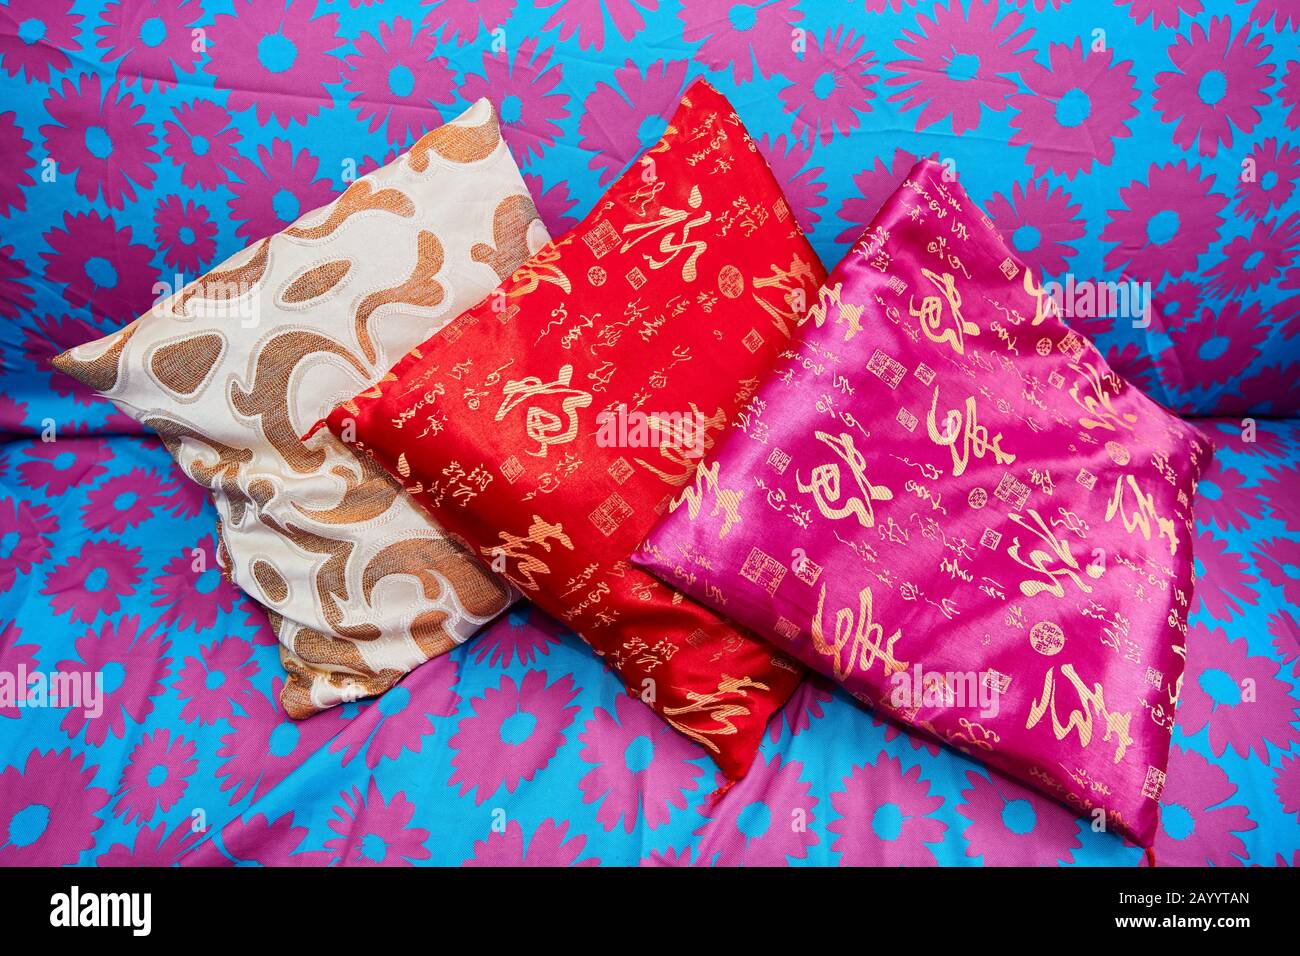 Drei kleine farbenfrohe asiatische Kissen, die auf einem blau gefärbten Sofa mit rosafarbenen Blumenmustern aufliegen Stockfoto